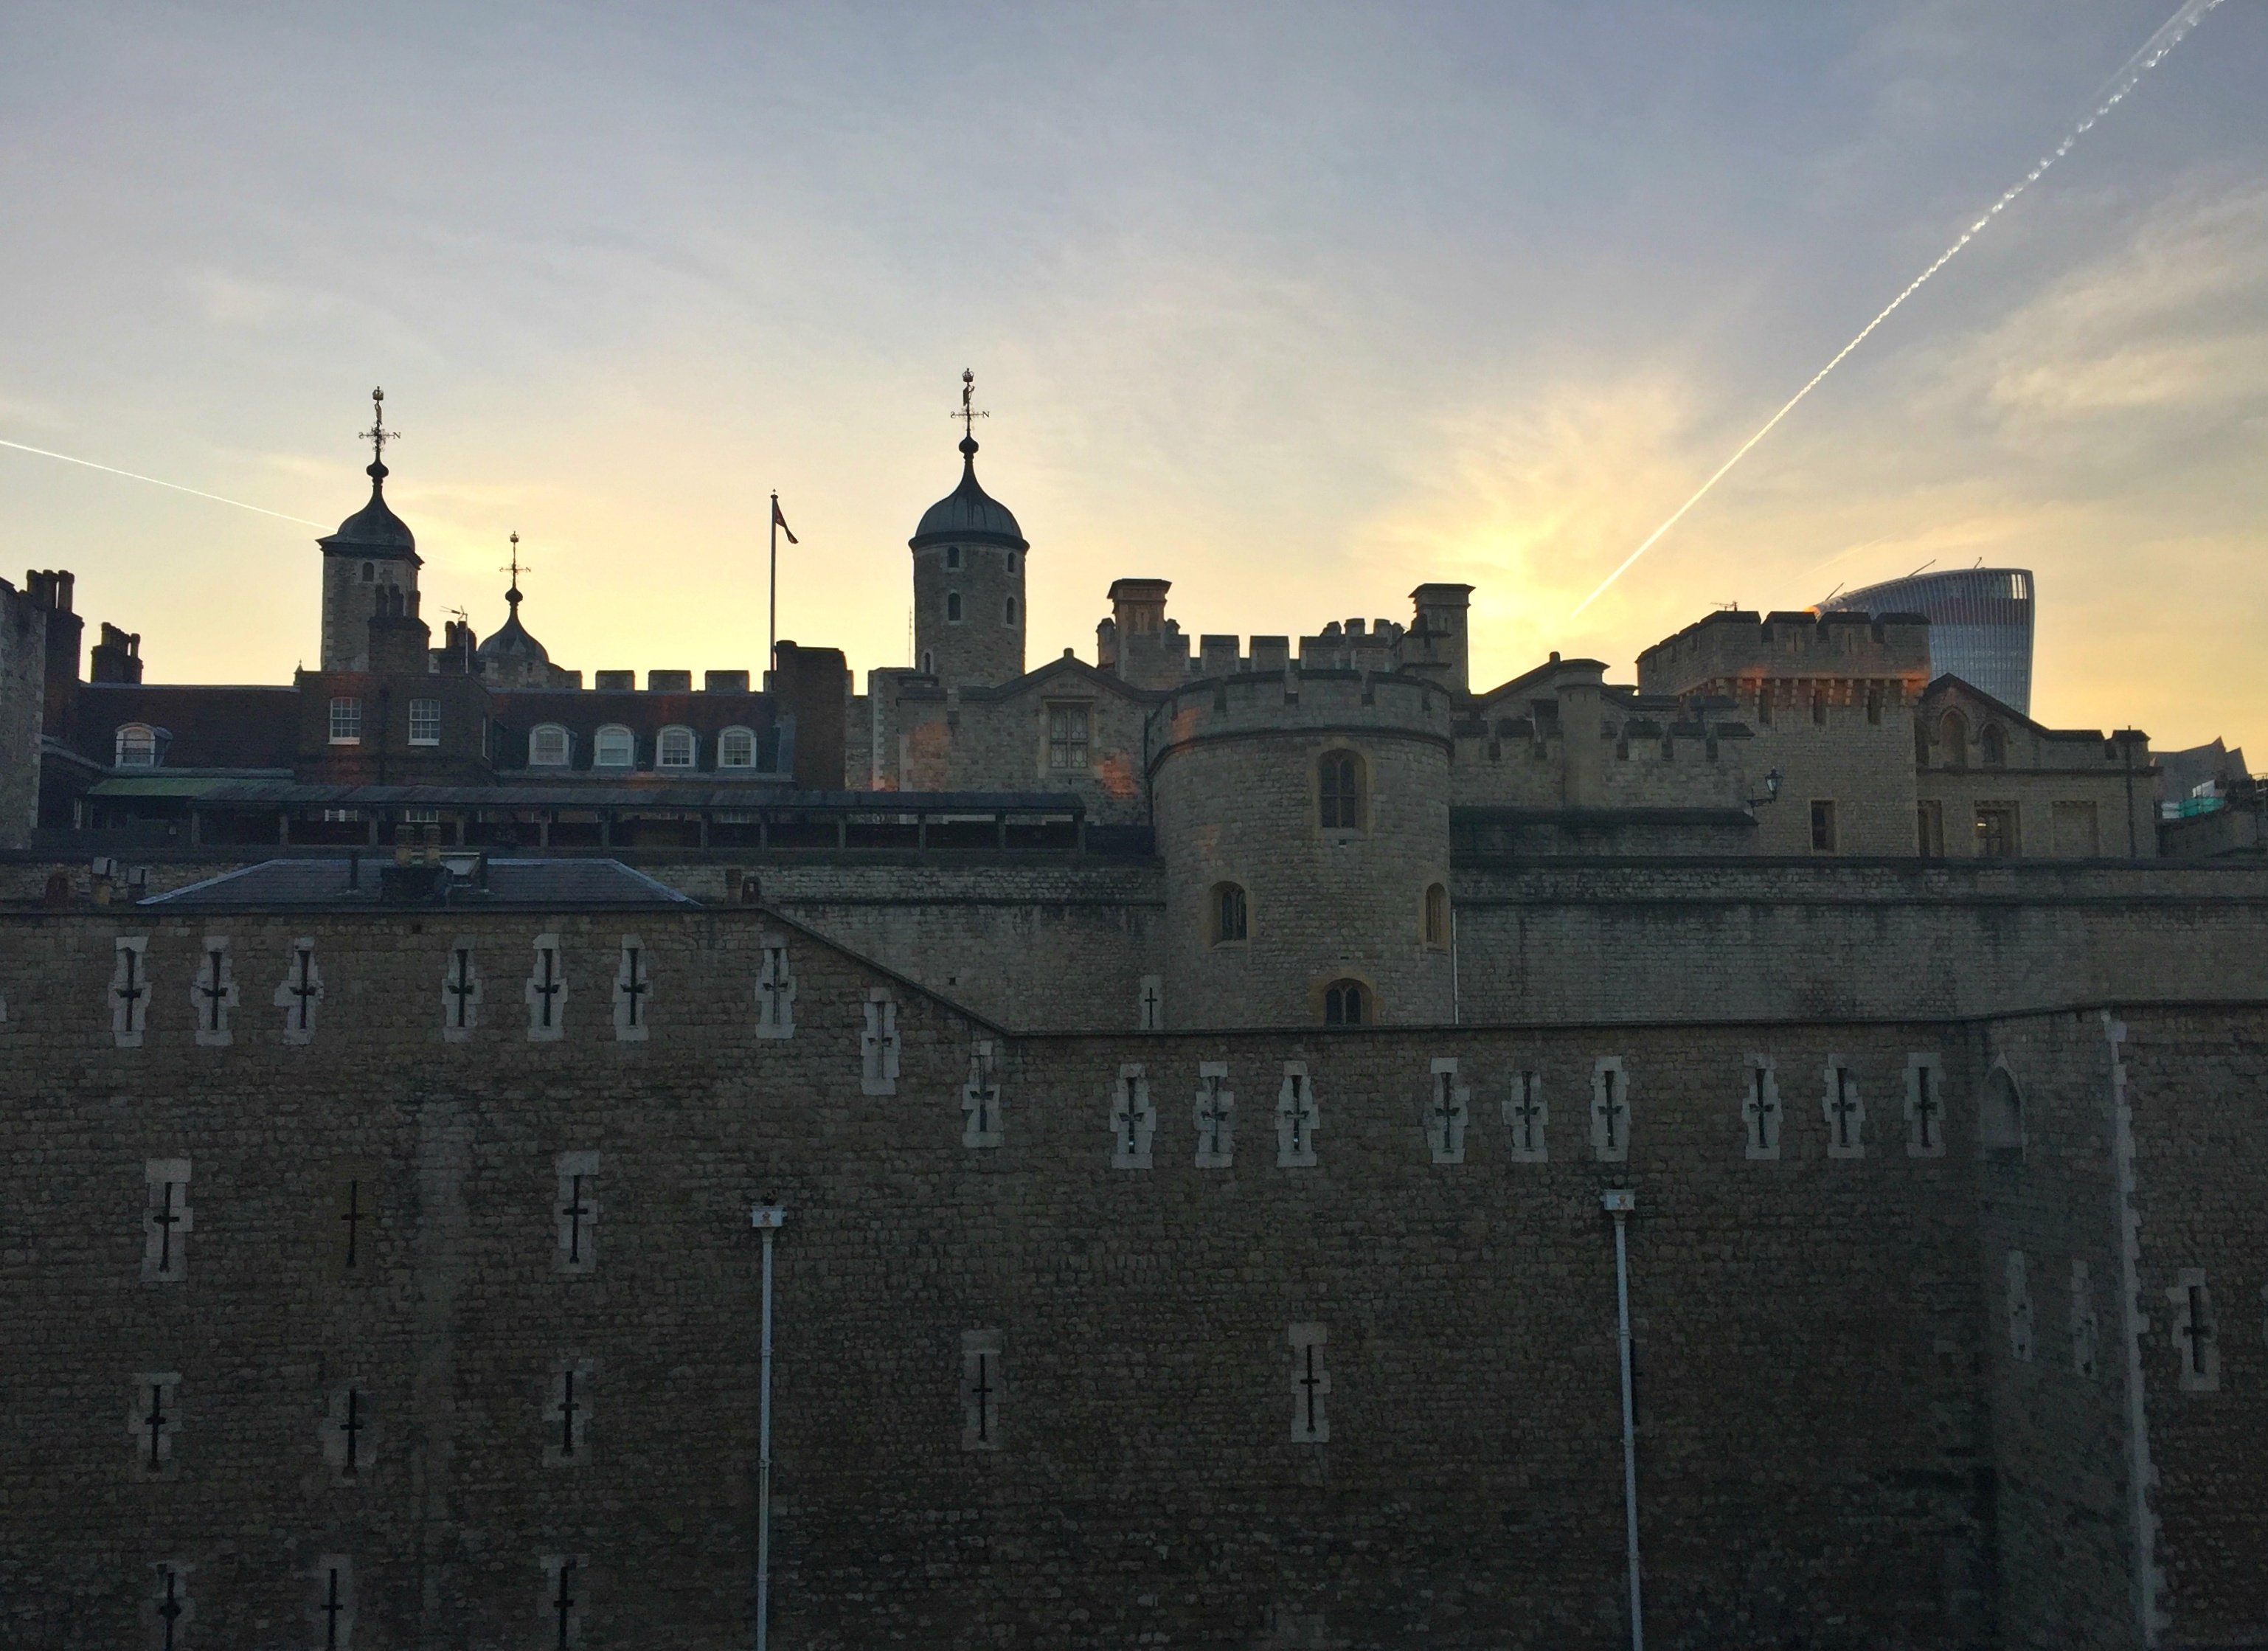 Tower_of_London.jpg